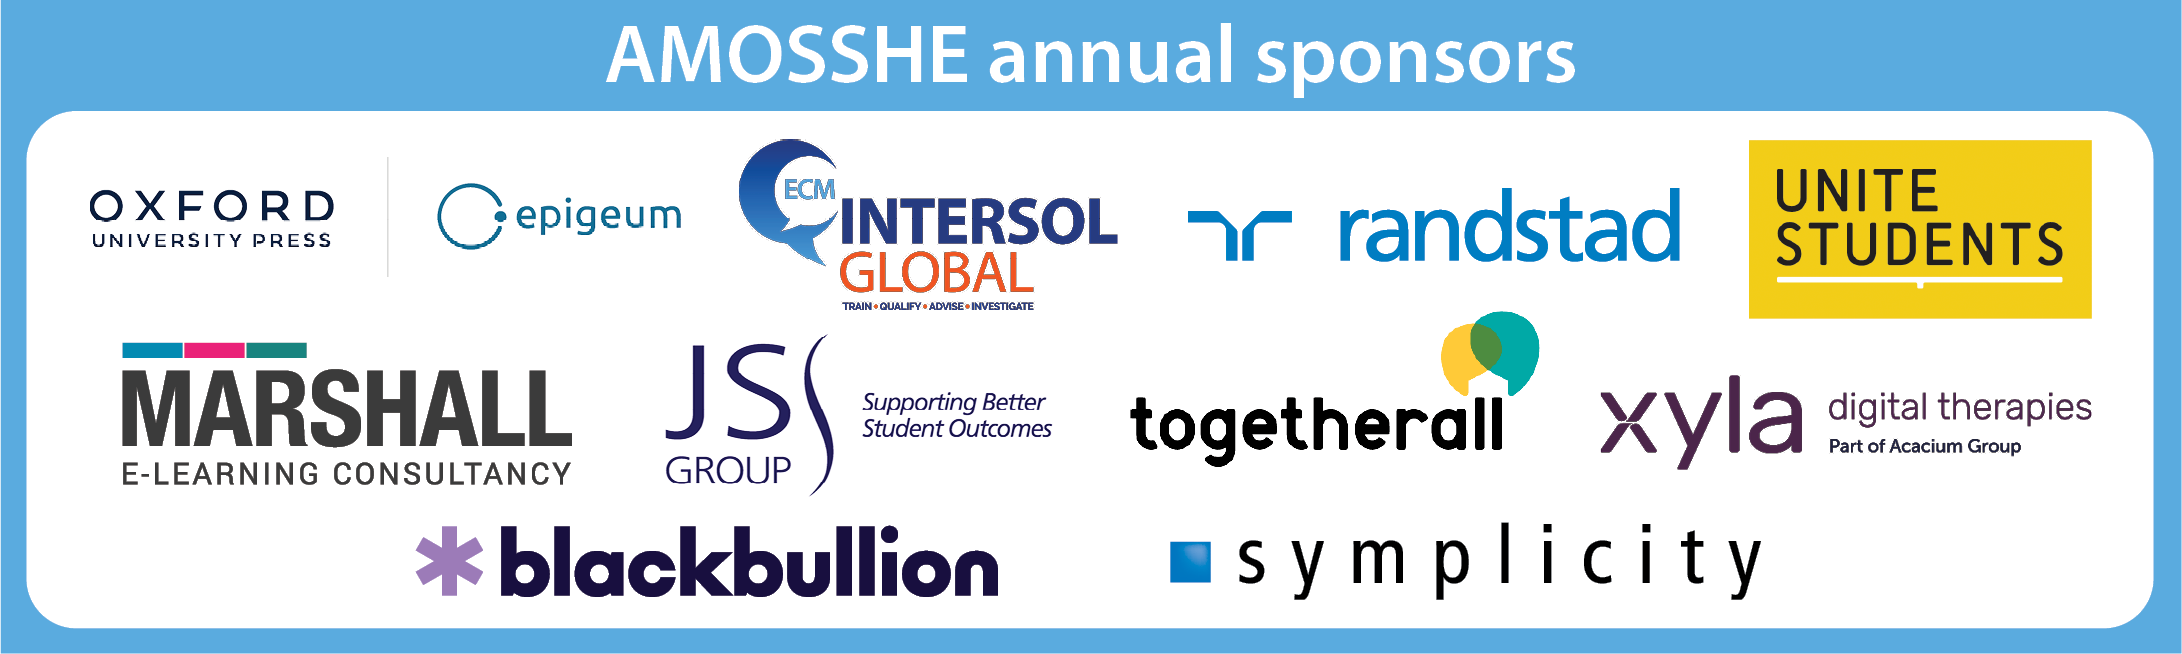 AMOSSHE sponsors